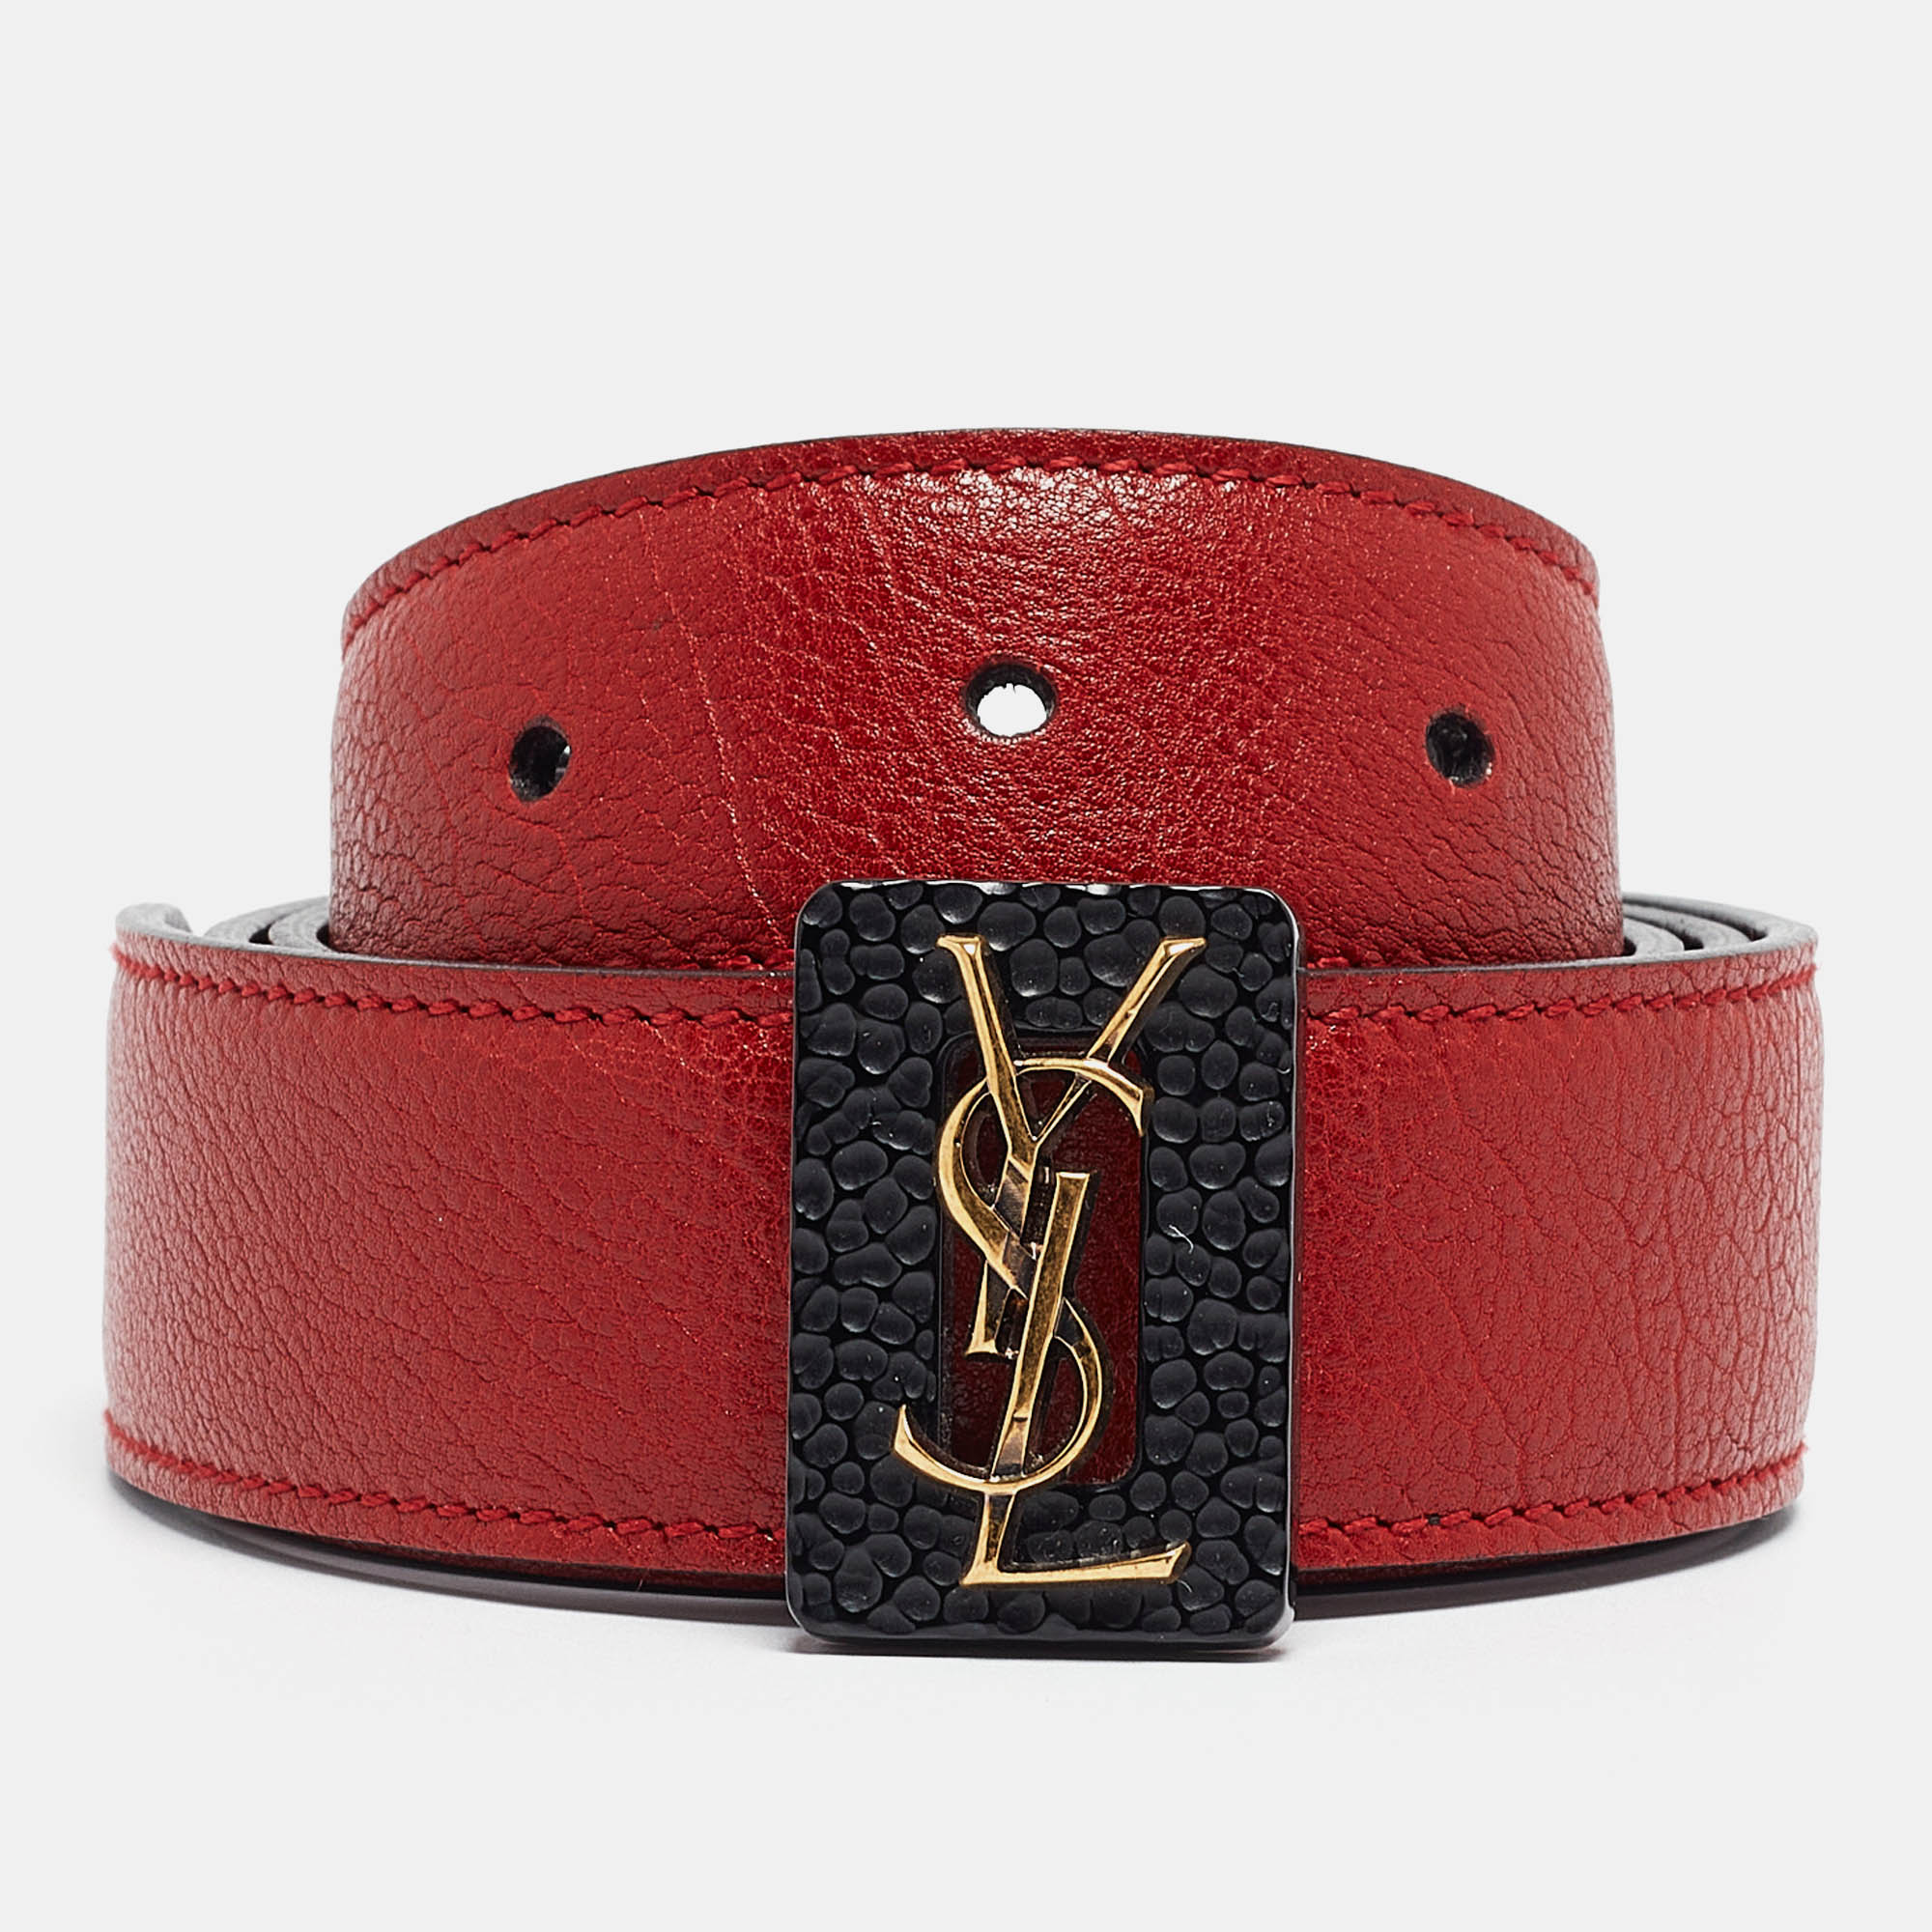 Yves saint laurent red/black leather monogram reversible waist belt m